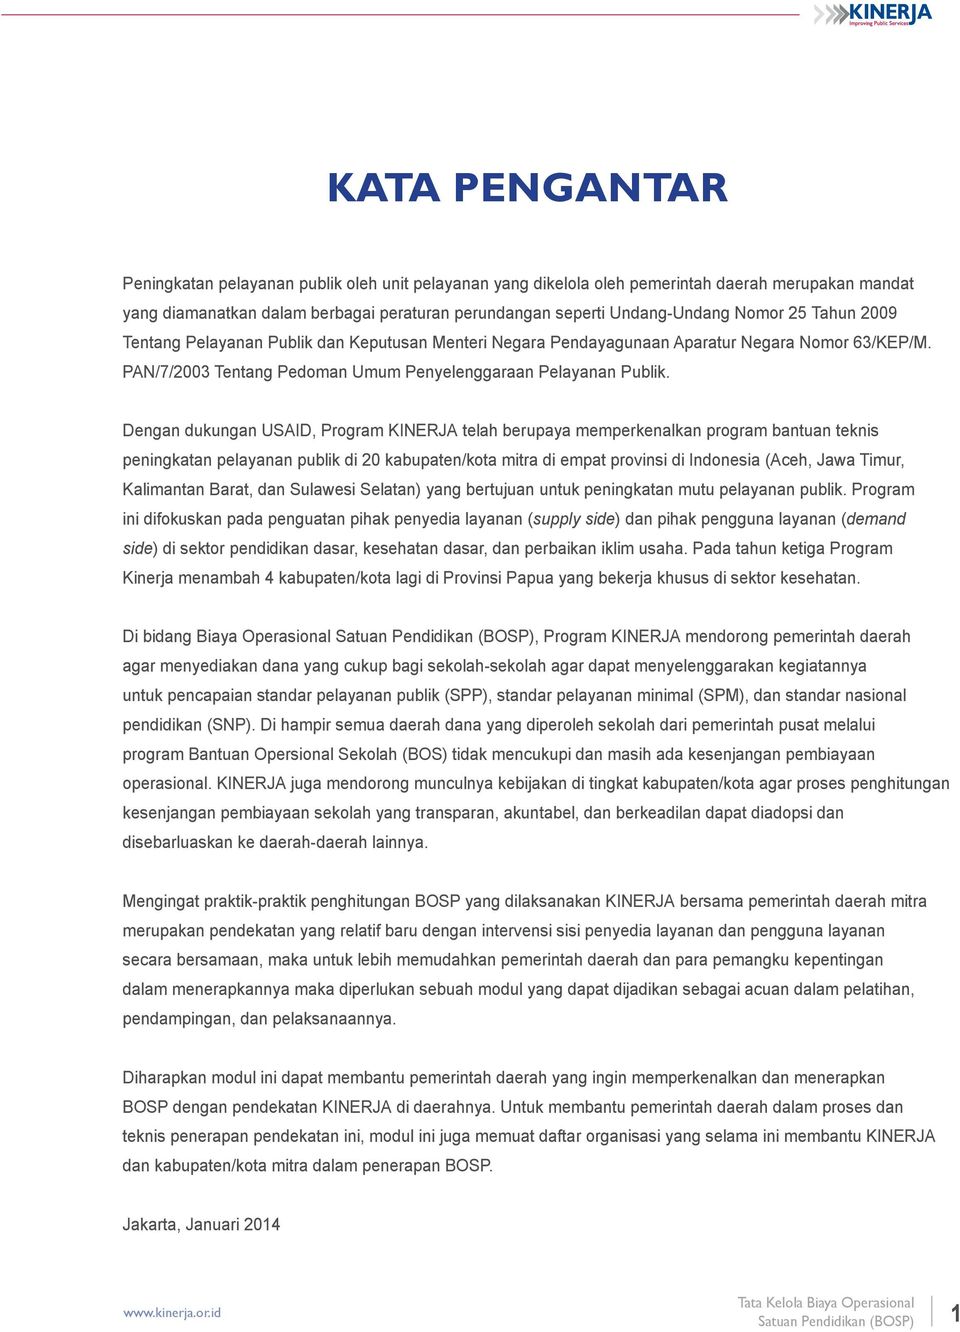 Dengan dukungan USAID, Program KINERJA telah berupaya memperkenalkan program bantuan teknis peningkatan pelayanan publik di 20 kabupaten/kota mitra di empat provinsi di Indonesia (Aceh, Jawa Timur,